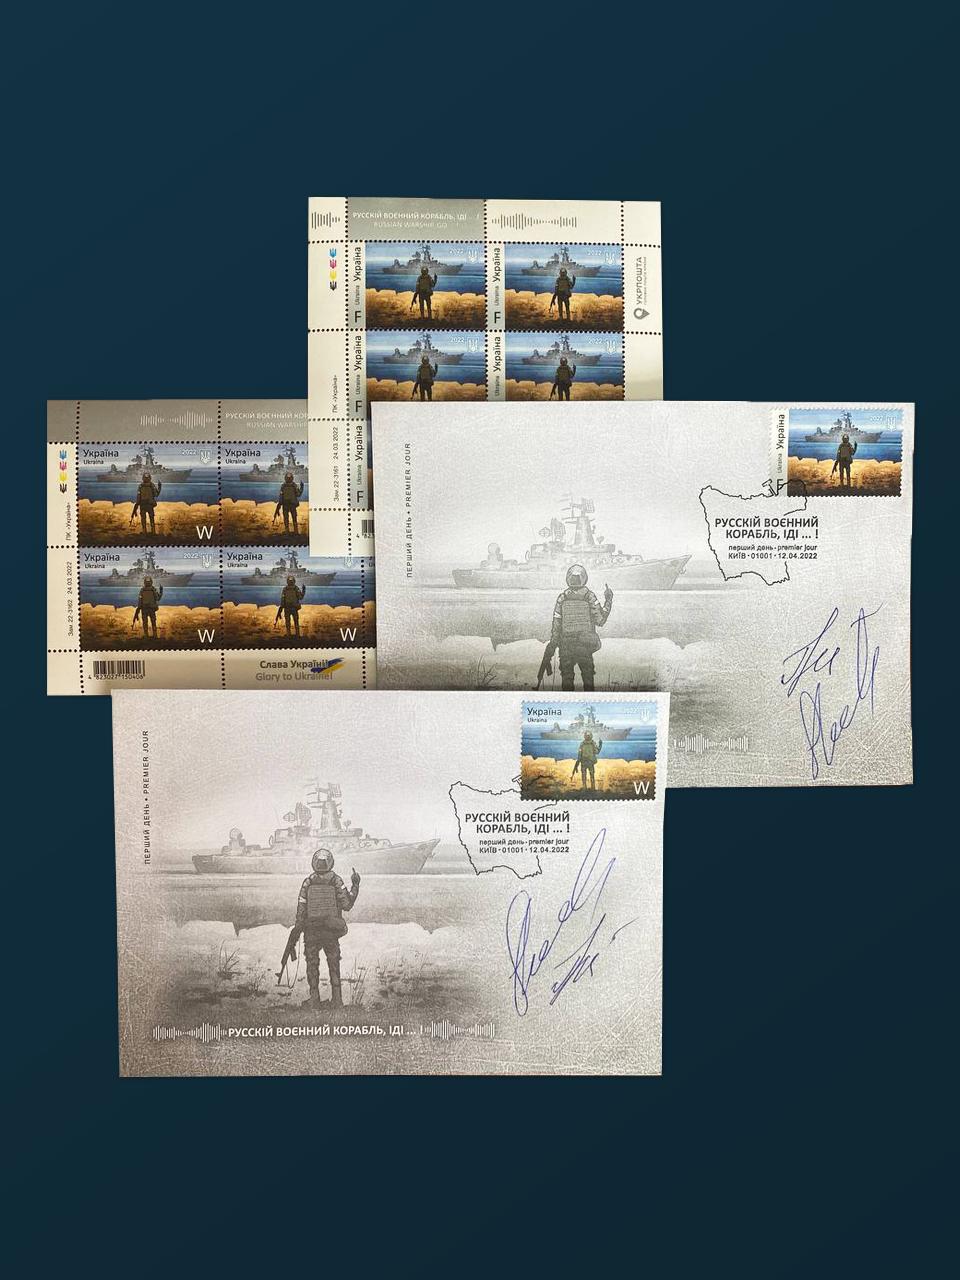 На аукціон виставили поштові марки «Русскій воєнний корабль, іді …!» та конверти зі спецпогашенням з підписами автора легендарної фрази. Стартова ціна — 25 тис. грн